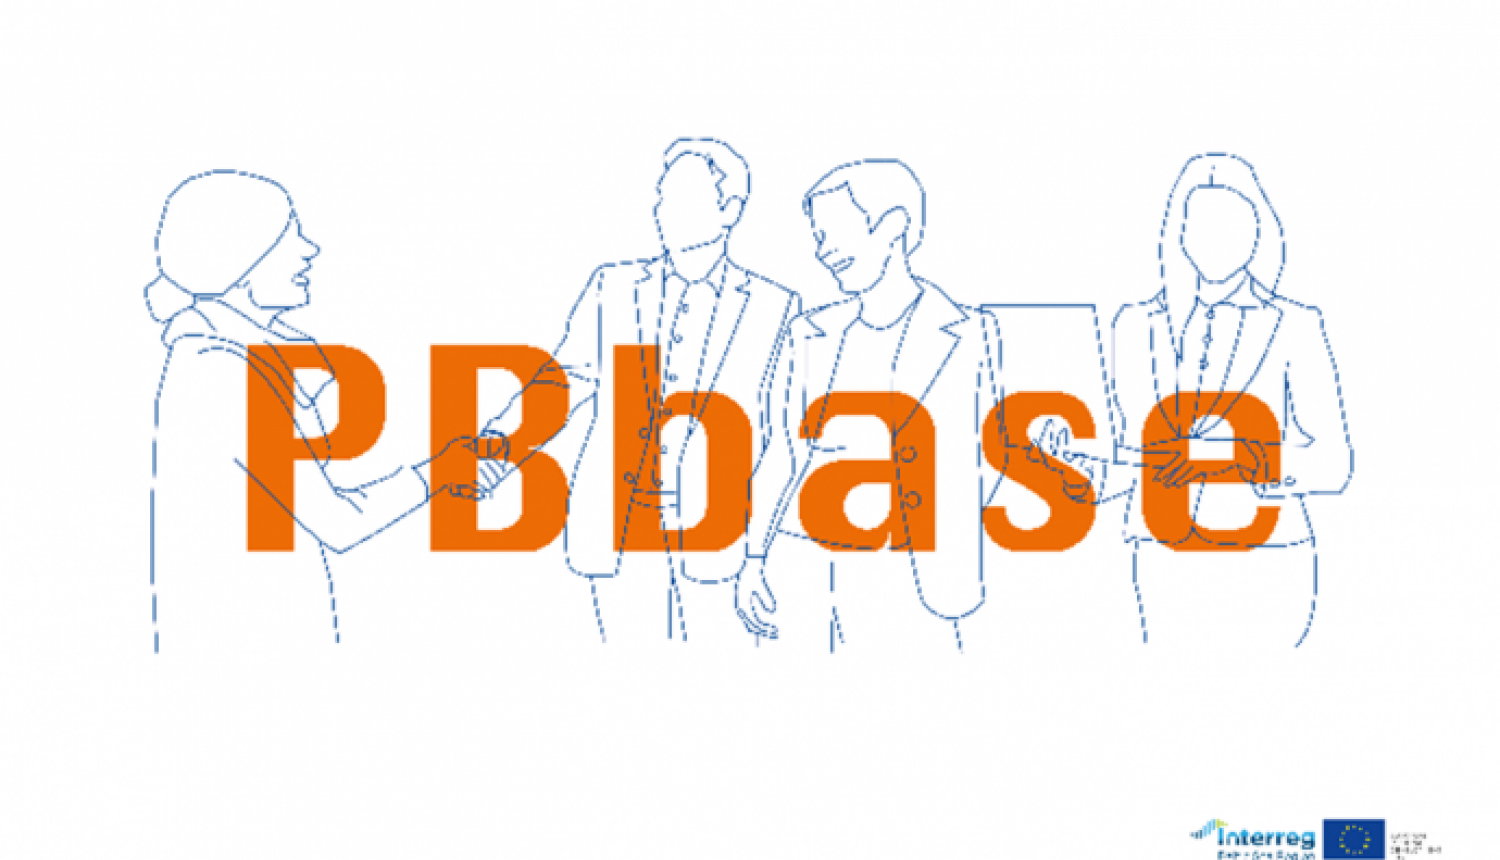 "PBbase" sadarbības tīklojums veltīts līdzdalības budžetēšanas jautājumiem: to vidū Vidzemes plānošanas reģiona pārstāvji